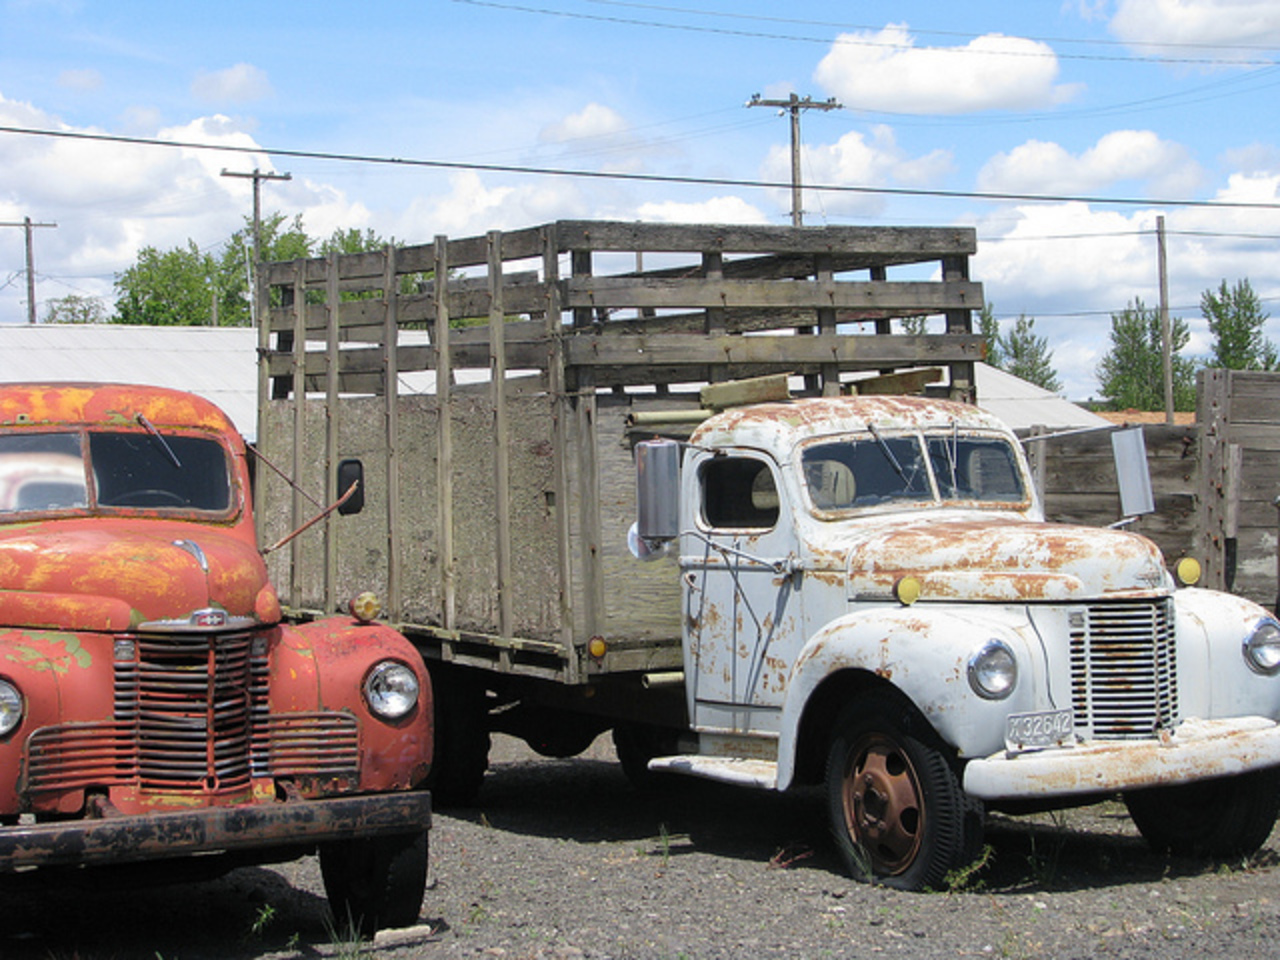 Flickr: The Farm Trucks Pool